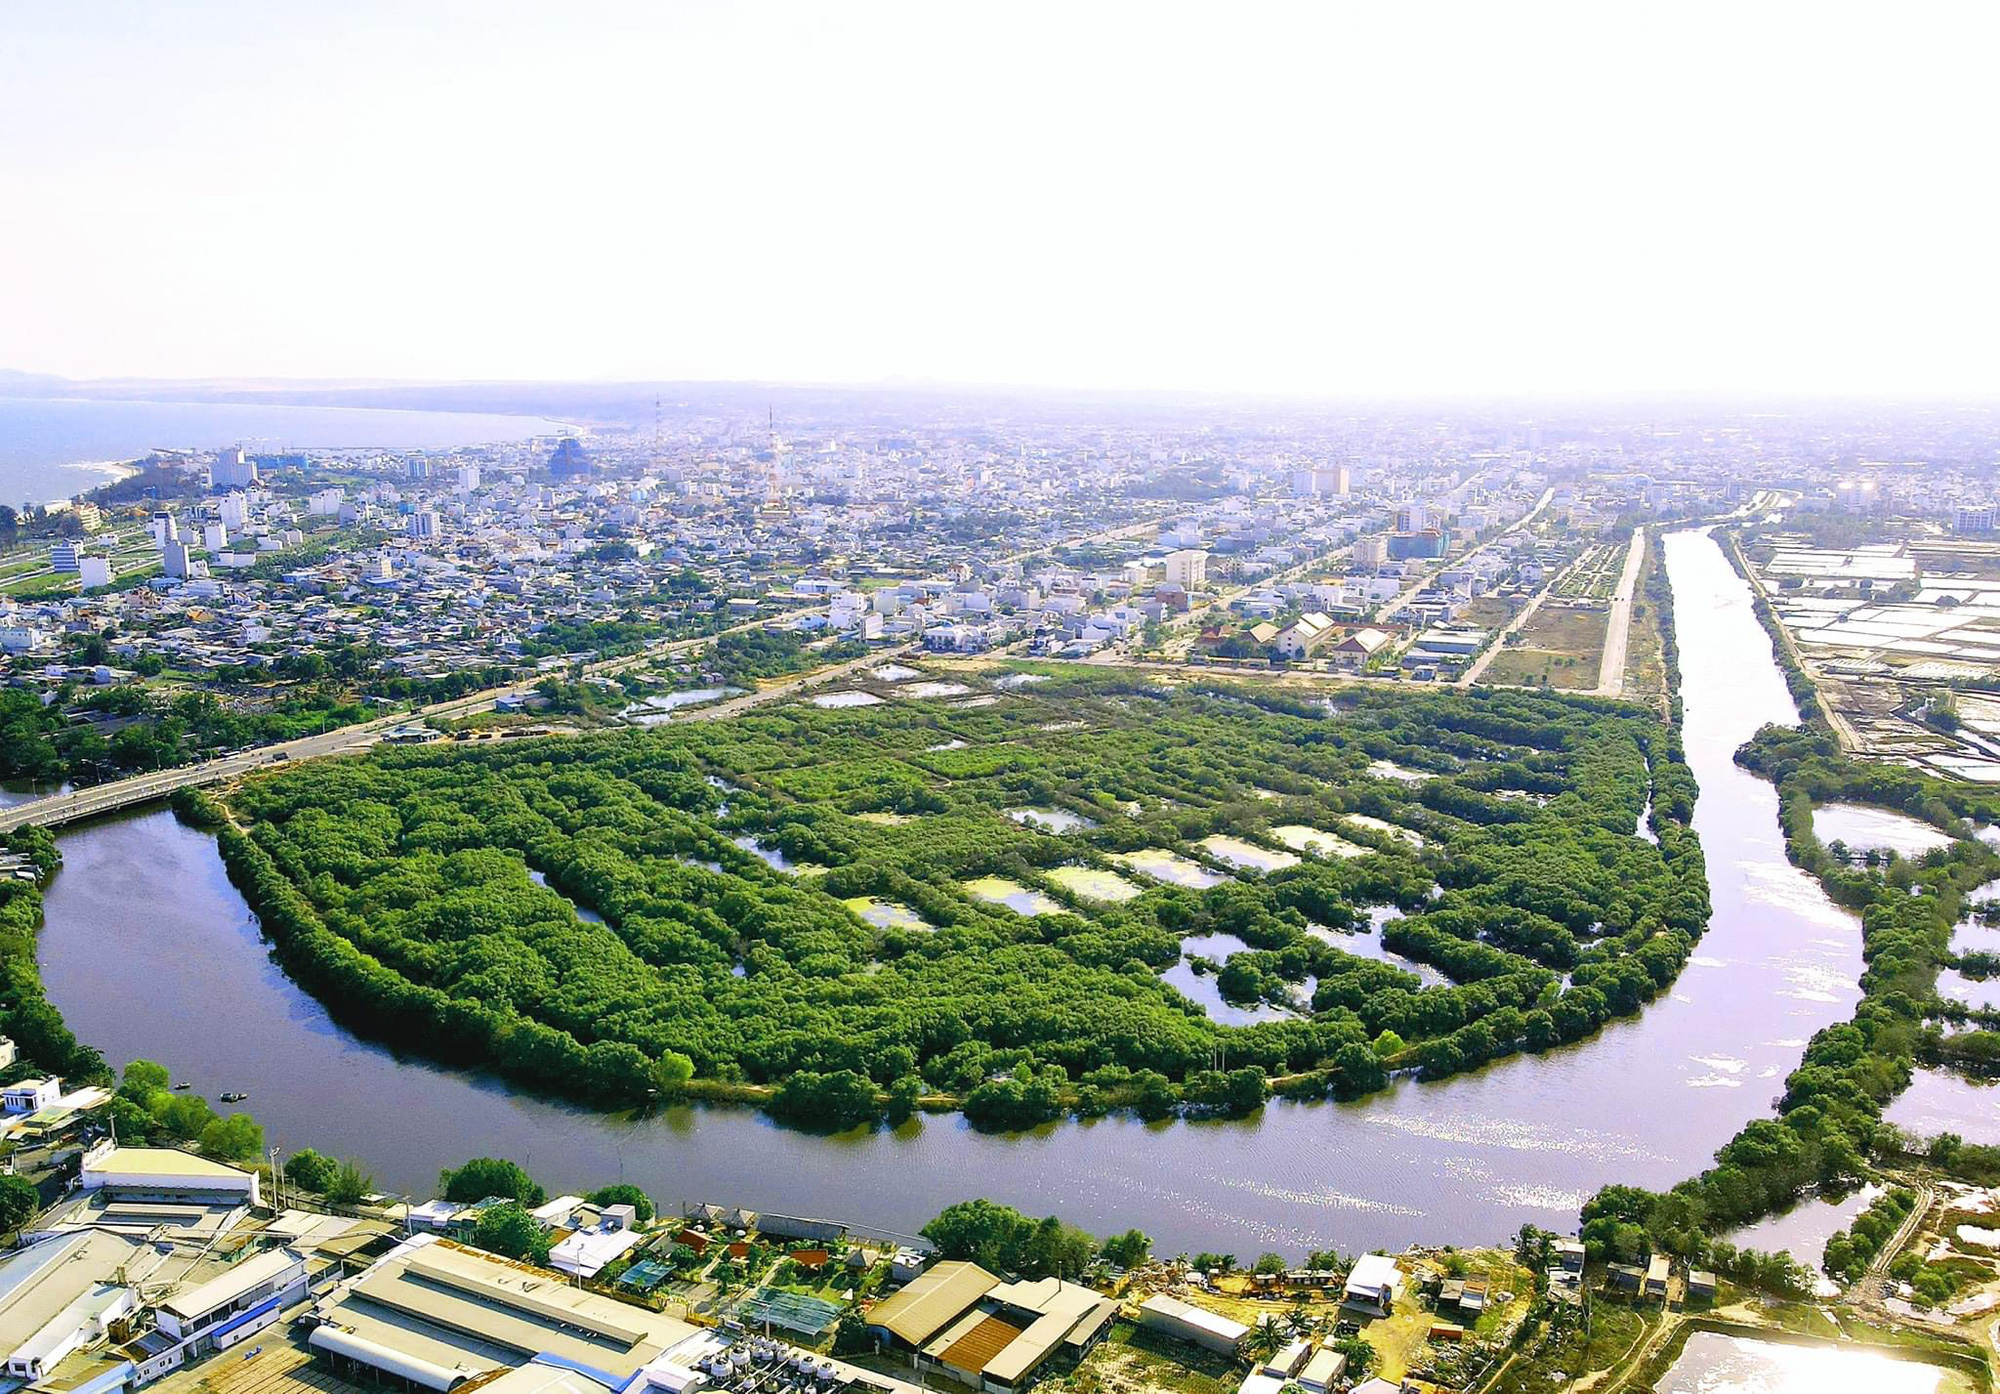 Bình Thuận: Biến bãi rác thành công viên hạc cầm và đạt giải thưởng kiến trúc ở Mỹ  - Ảnh 1.